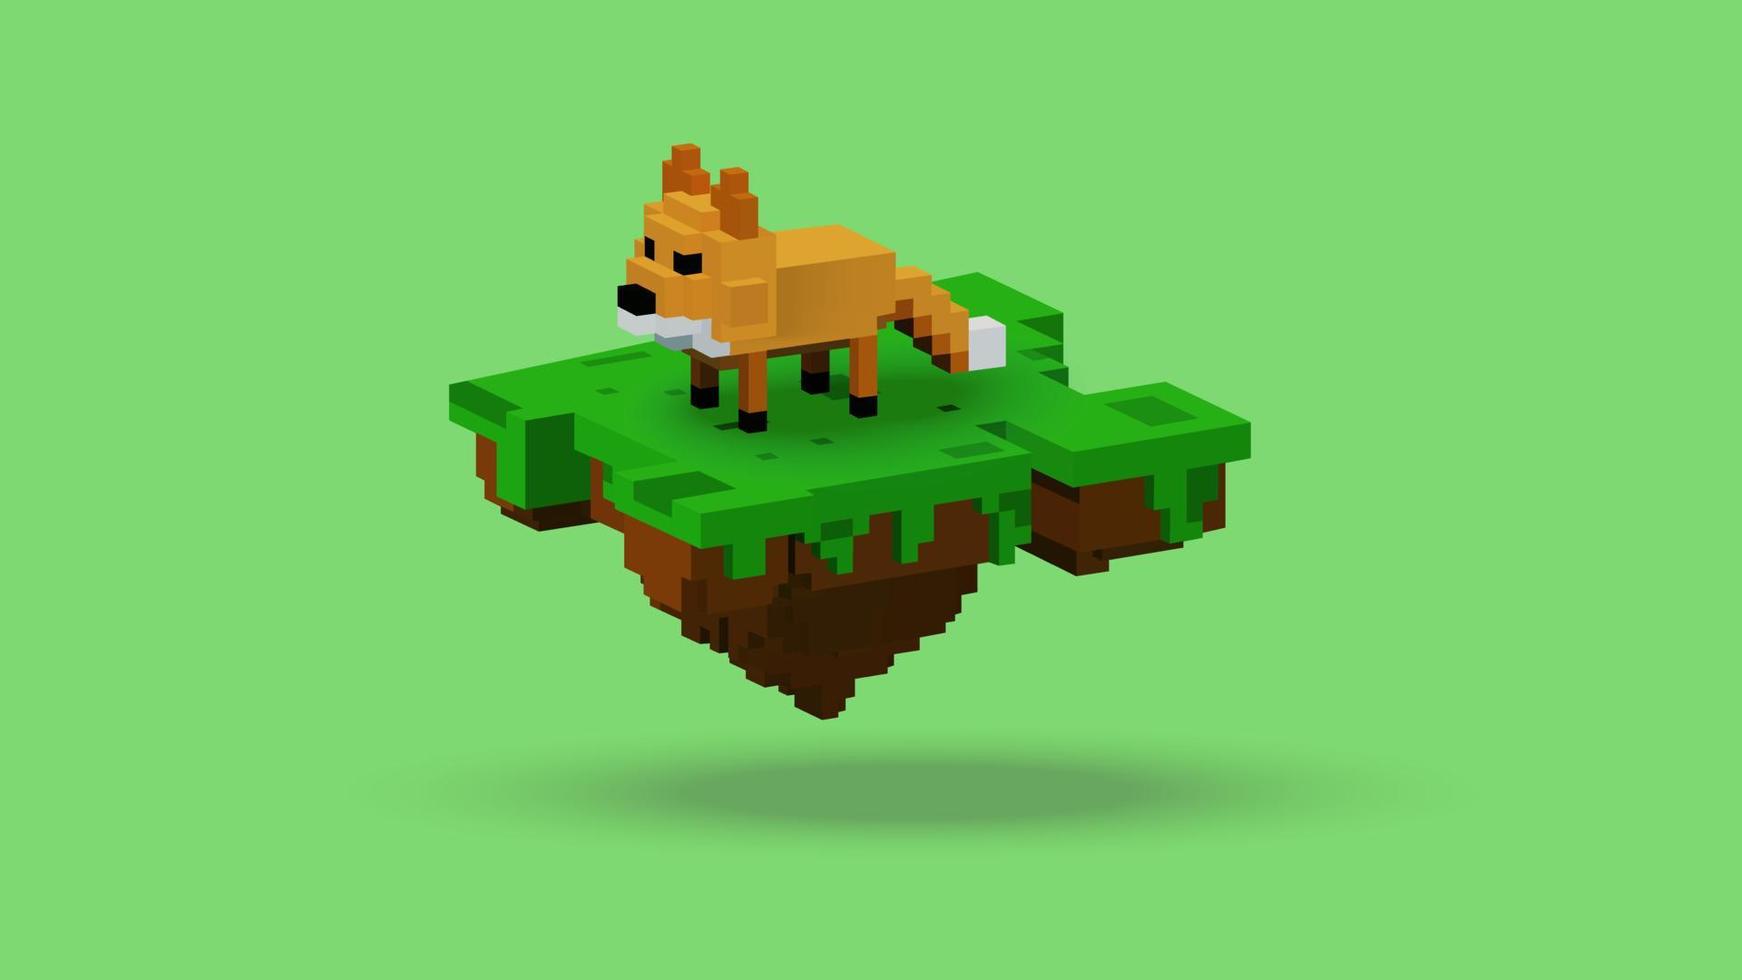 vectorafbeelding van 3D-rendering fox dier op drijvend eiland met voxel-stijl. met oranje, bruin, zwart, groen en wit kleurenschema. perfect voor referenties van gamekarakters vector